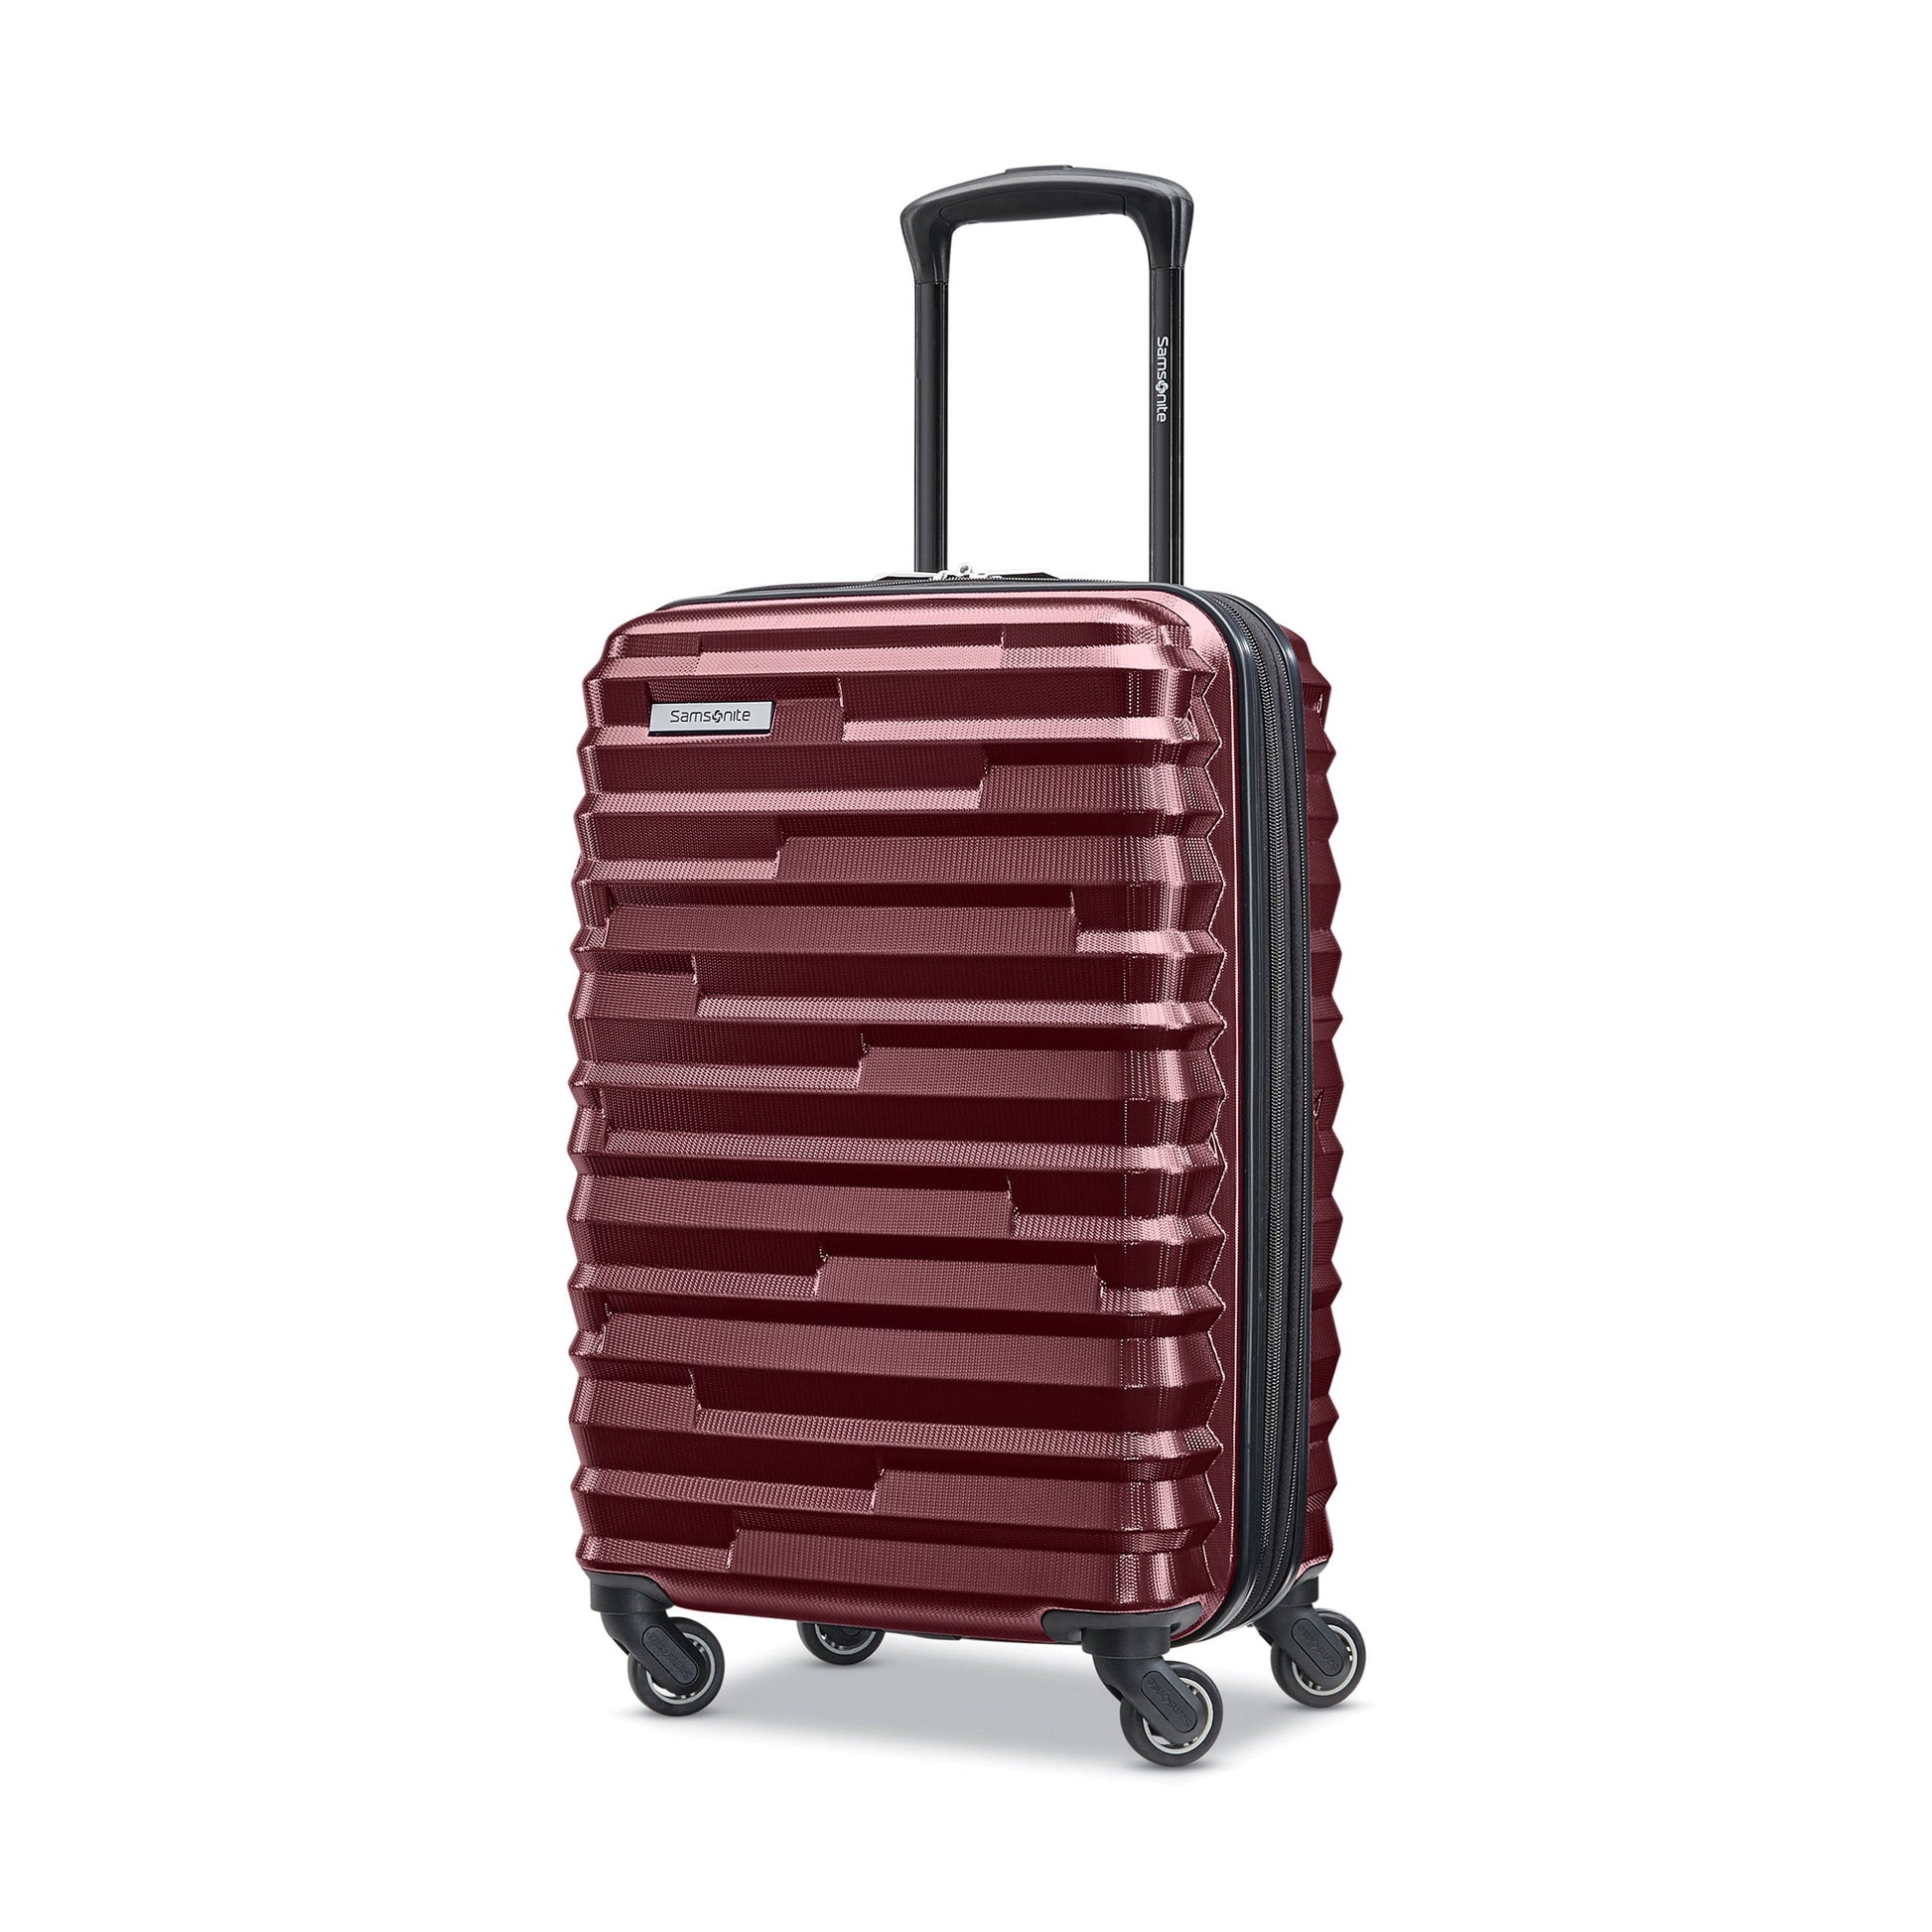 Samsonite Ziplite 4.0 Spinner Carry-On Expandable Luggage - Merlot